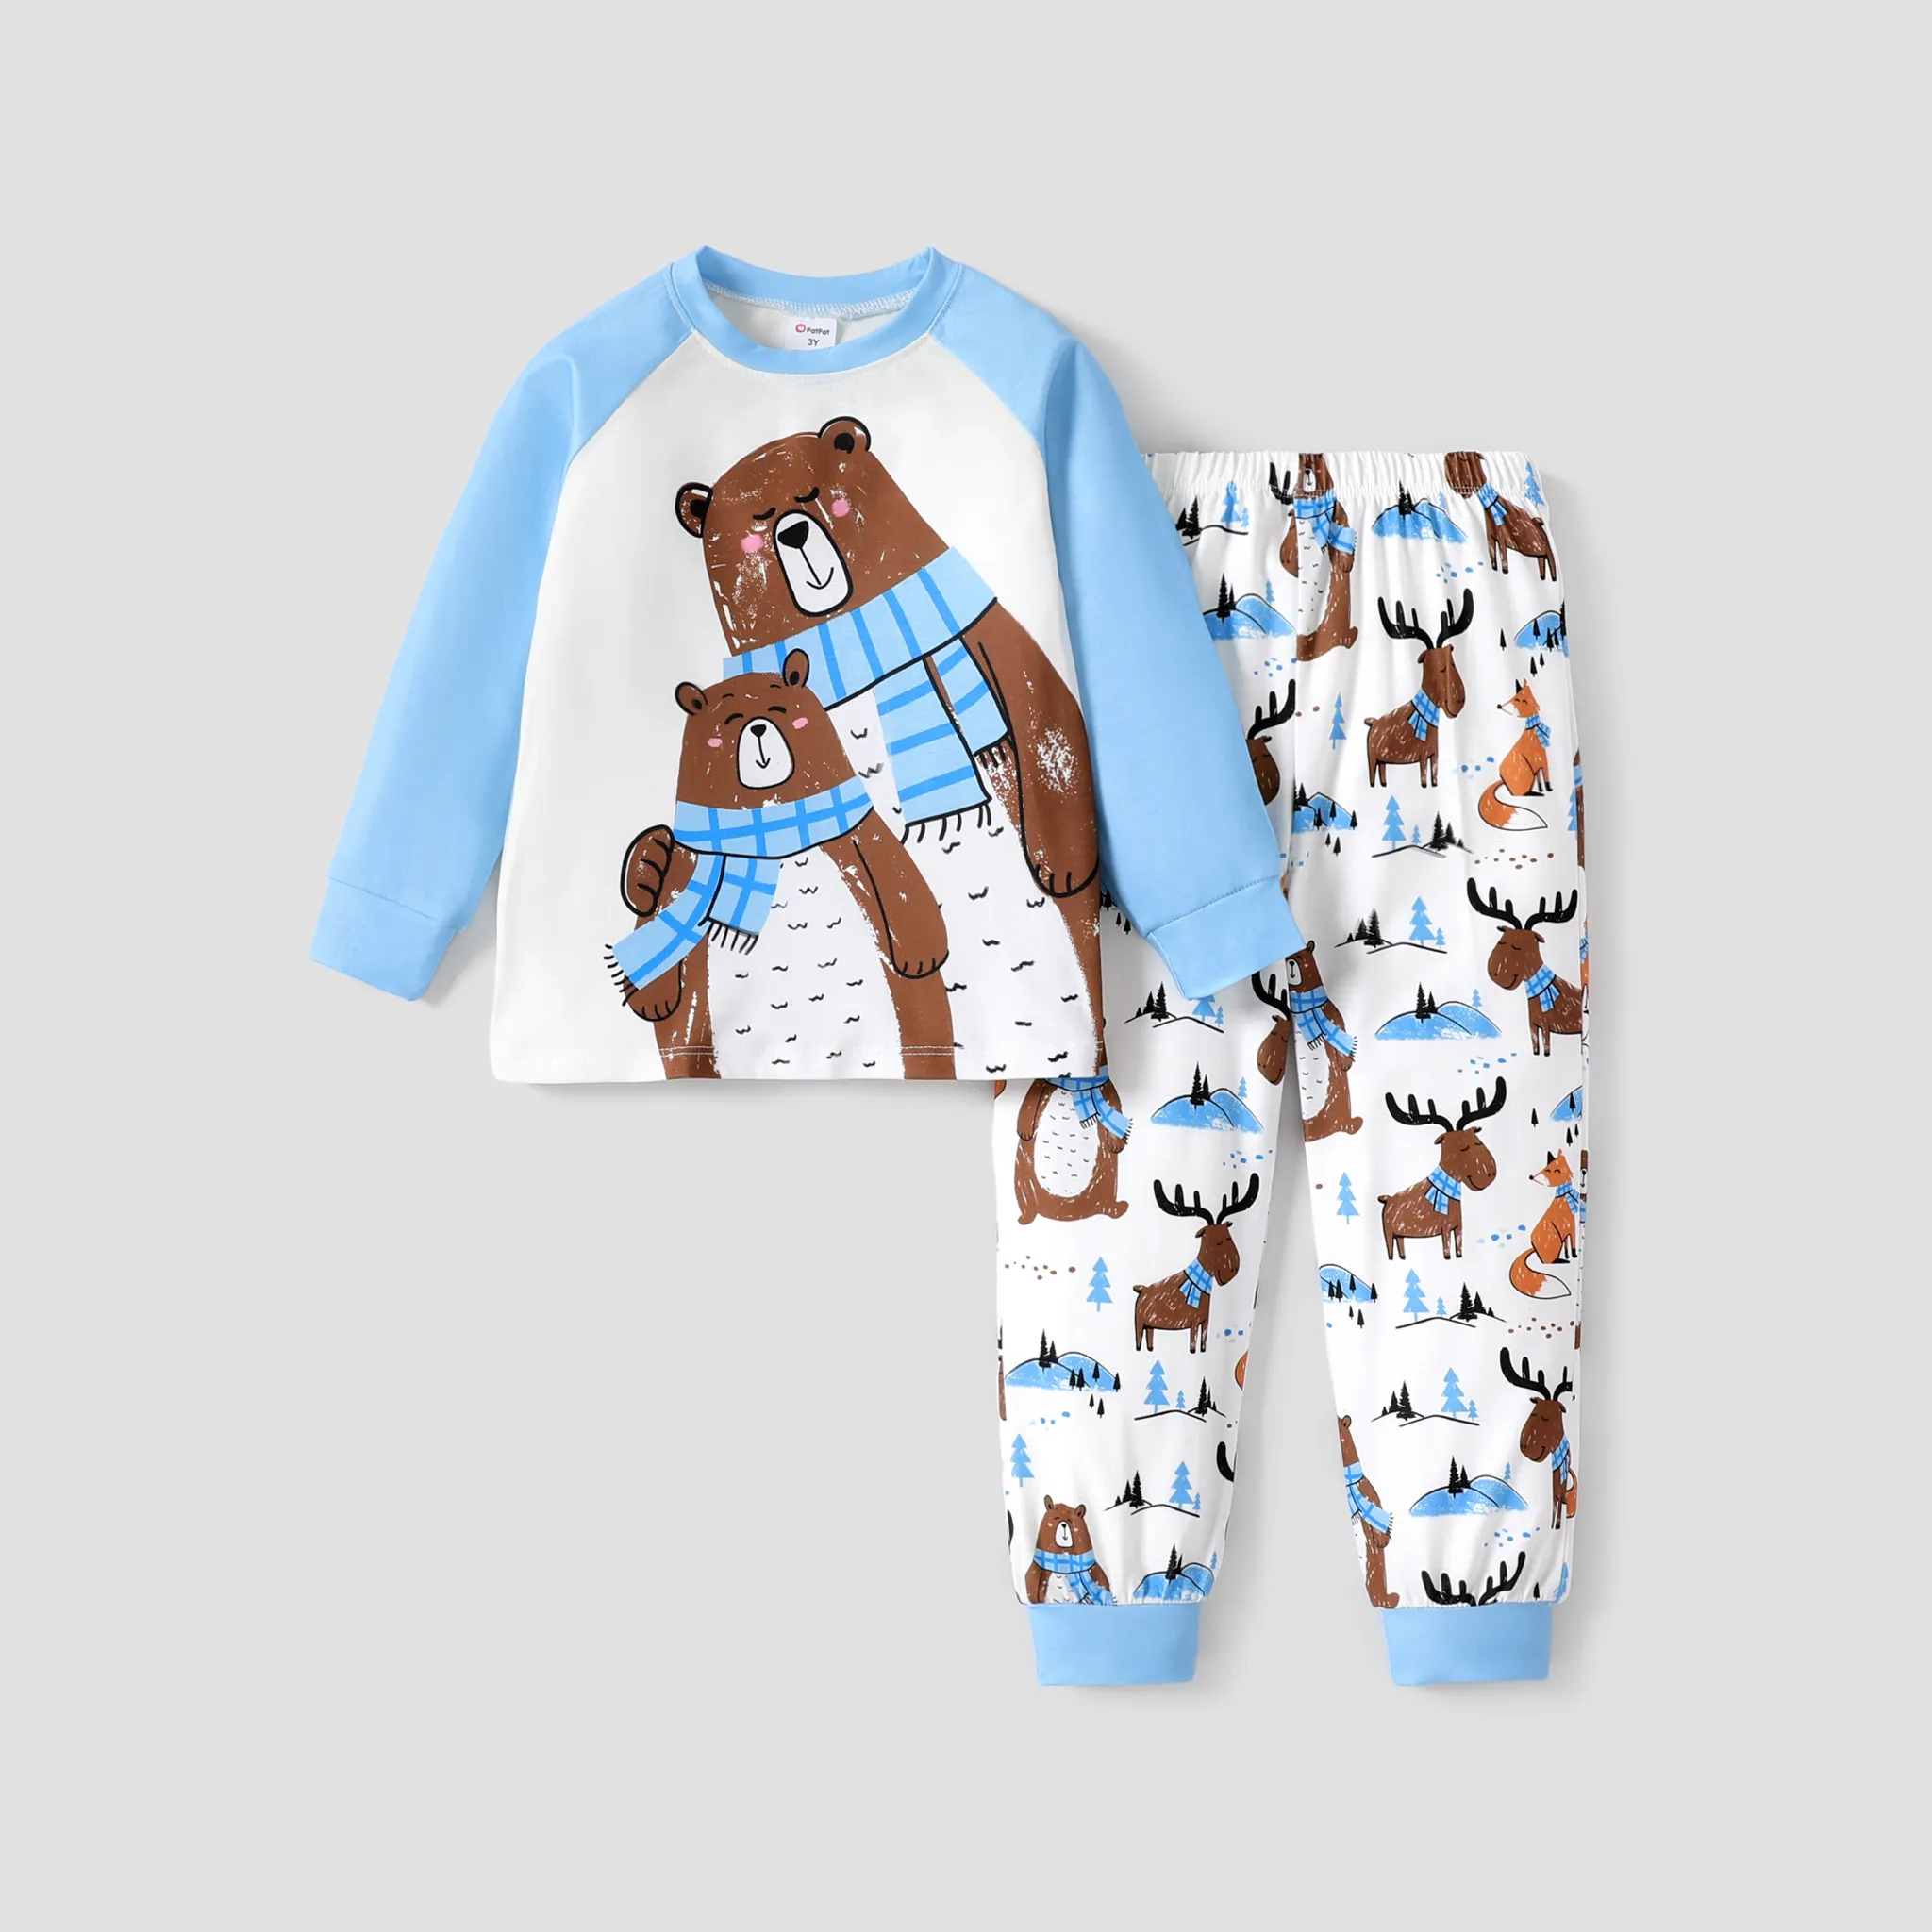 2pcs Toddler Boy Casual Animal Pattern Pajamas